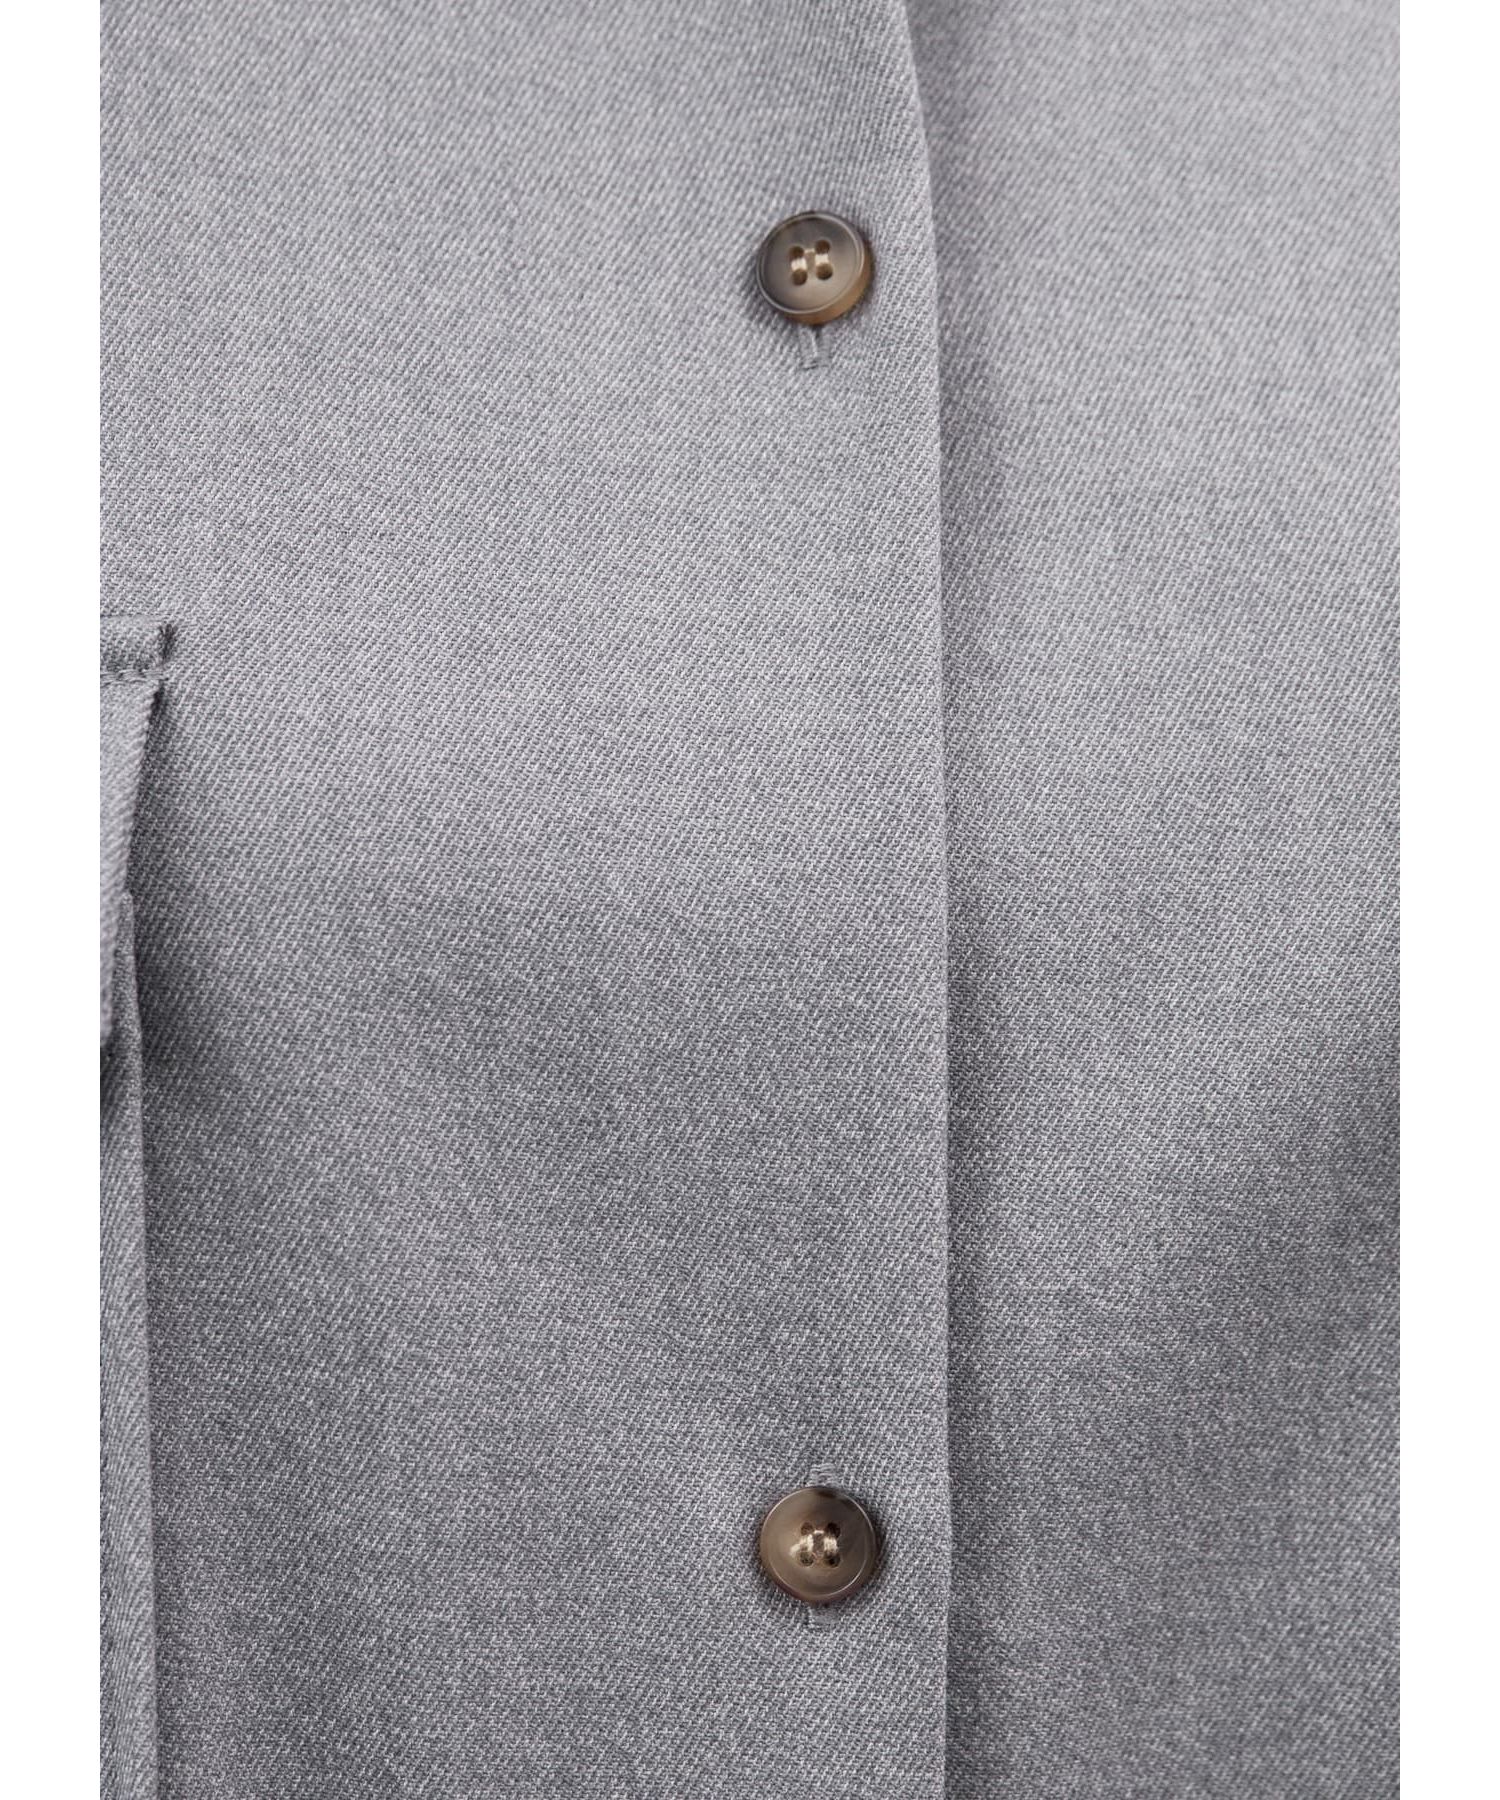 LUXE】ウール調背面ギャザーシャツジャケット|STYLE DELI(スタイルデリ